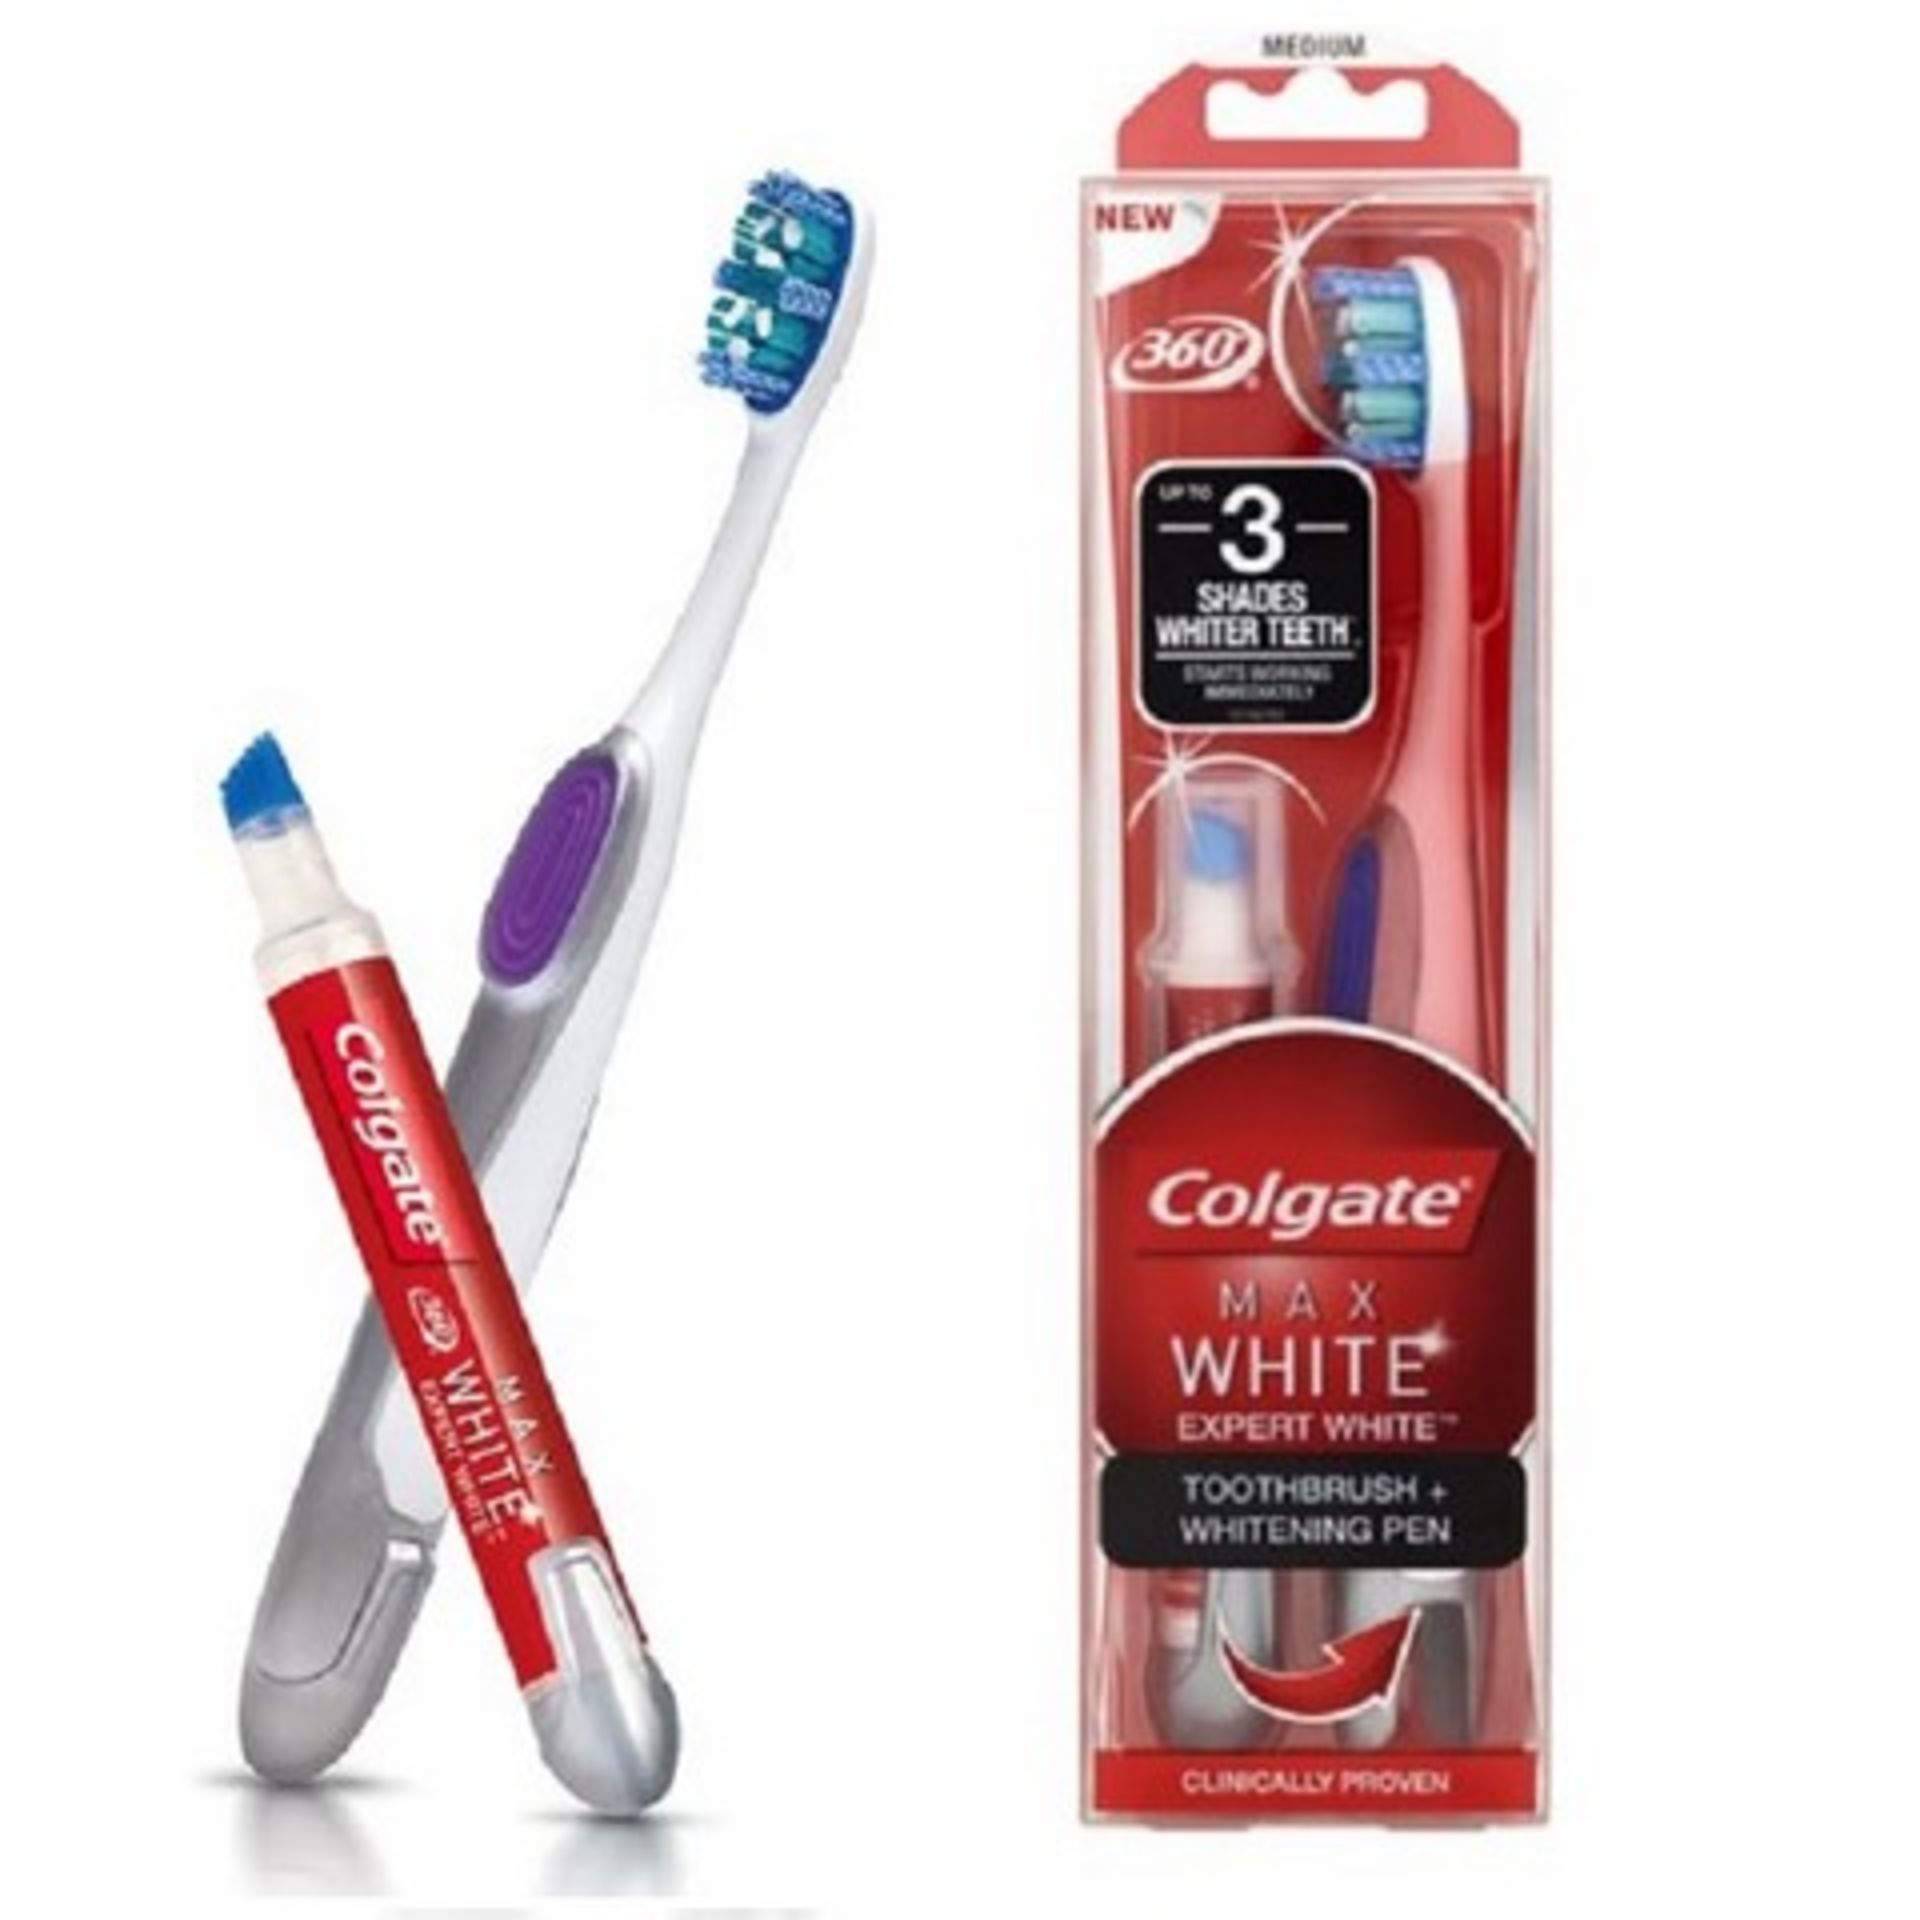 + VAT Brand New Colgate (Â£12.50 Supermarket Price) Max White Expert White Toothbrush and Whitening